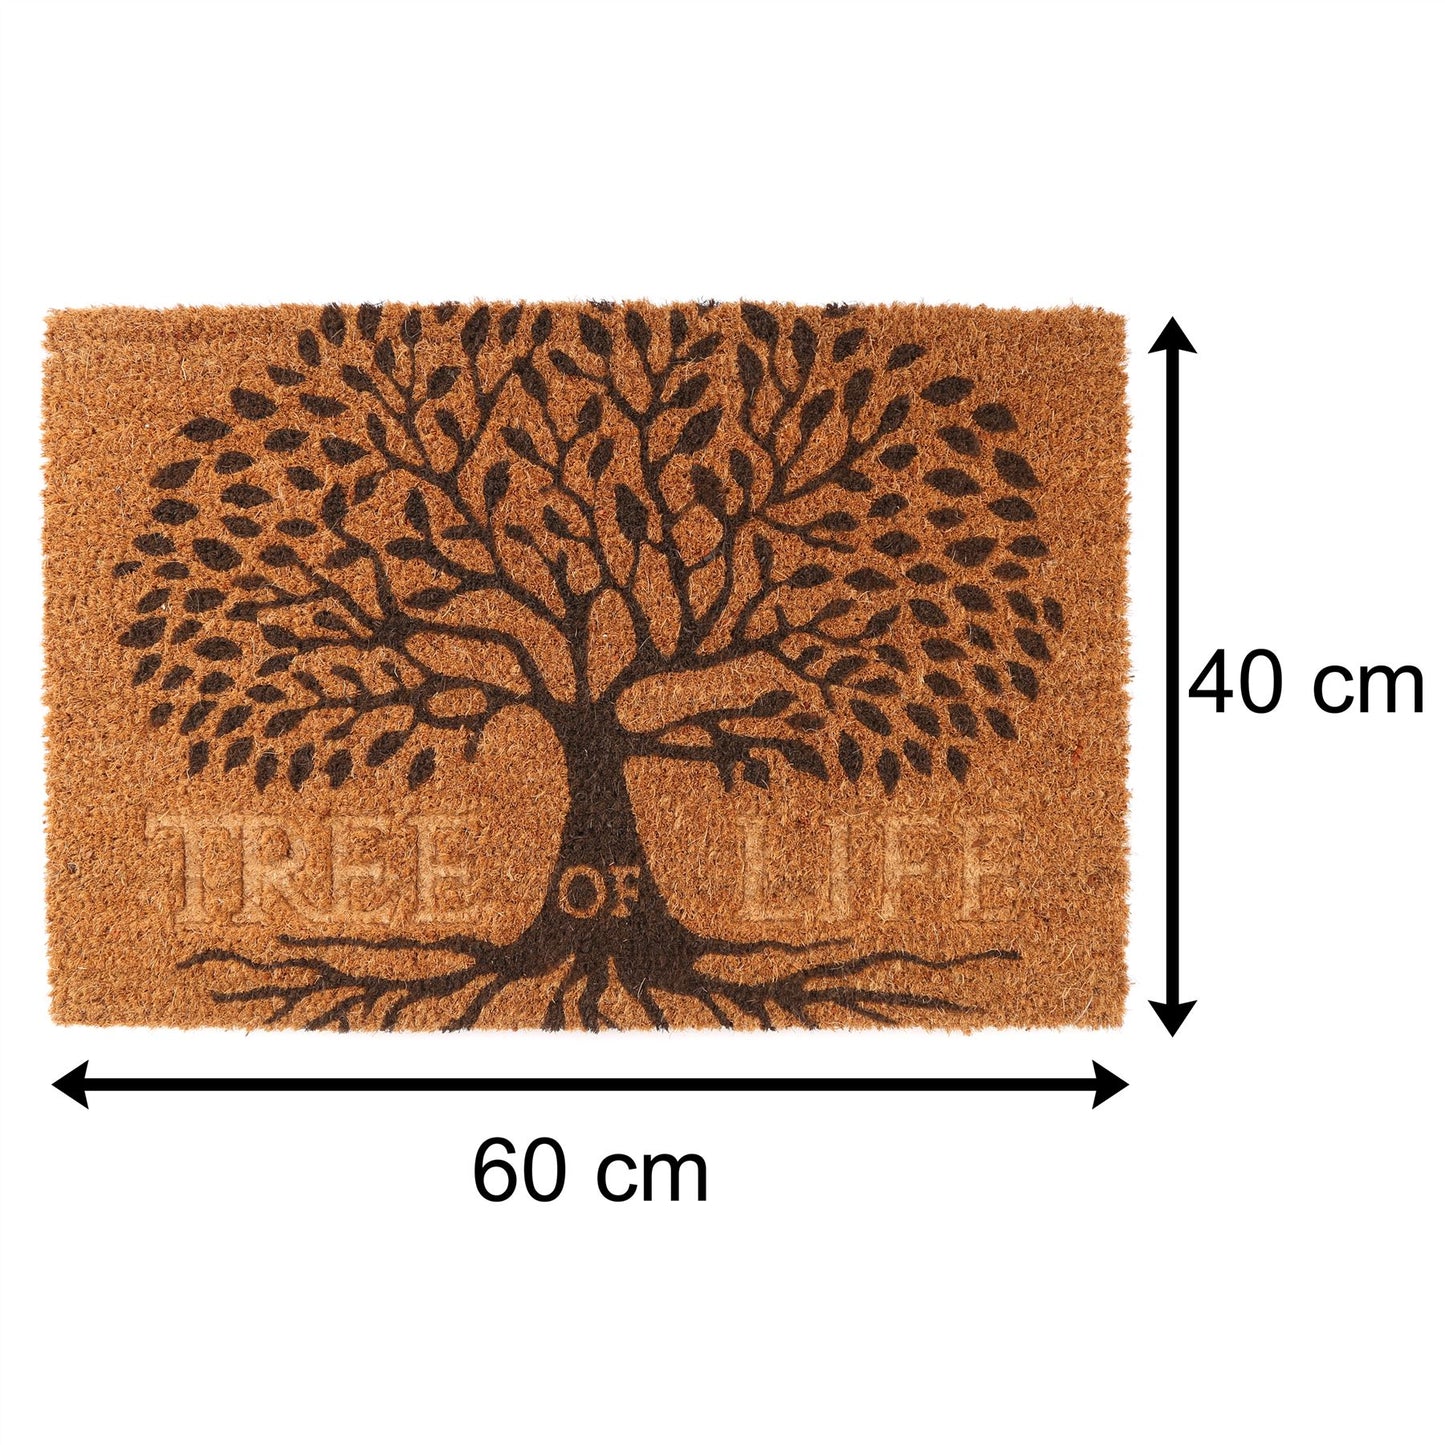 Tree Of Life Doormat | Rectangular 60x40cm Outdoor Coir Door Mat | Non-Slip PVC Backed Natural Coir Doormat